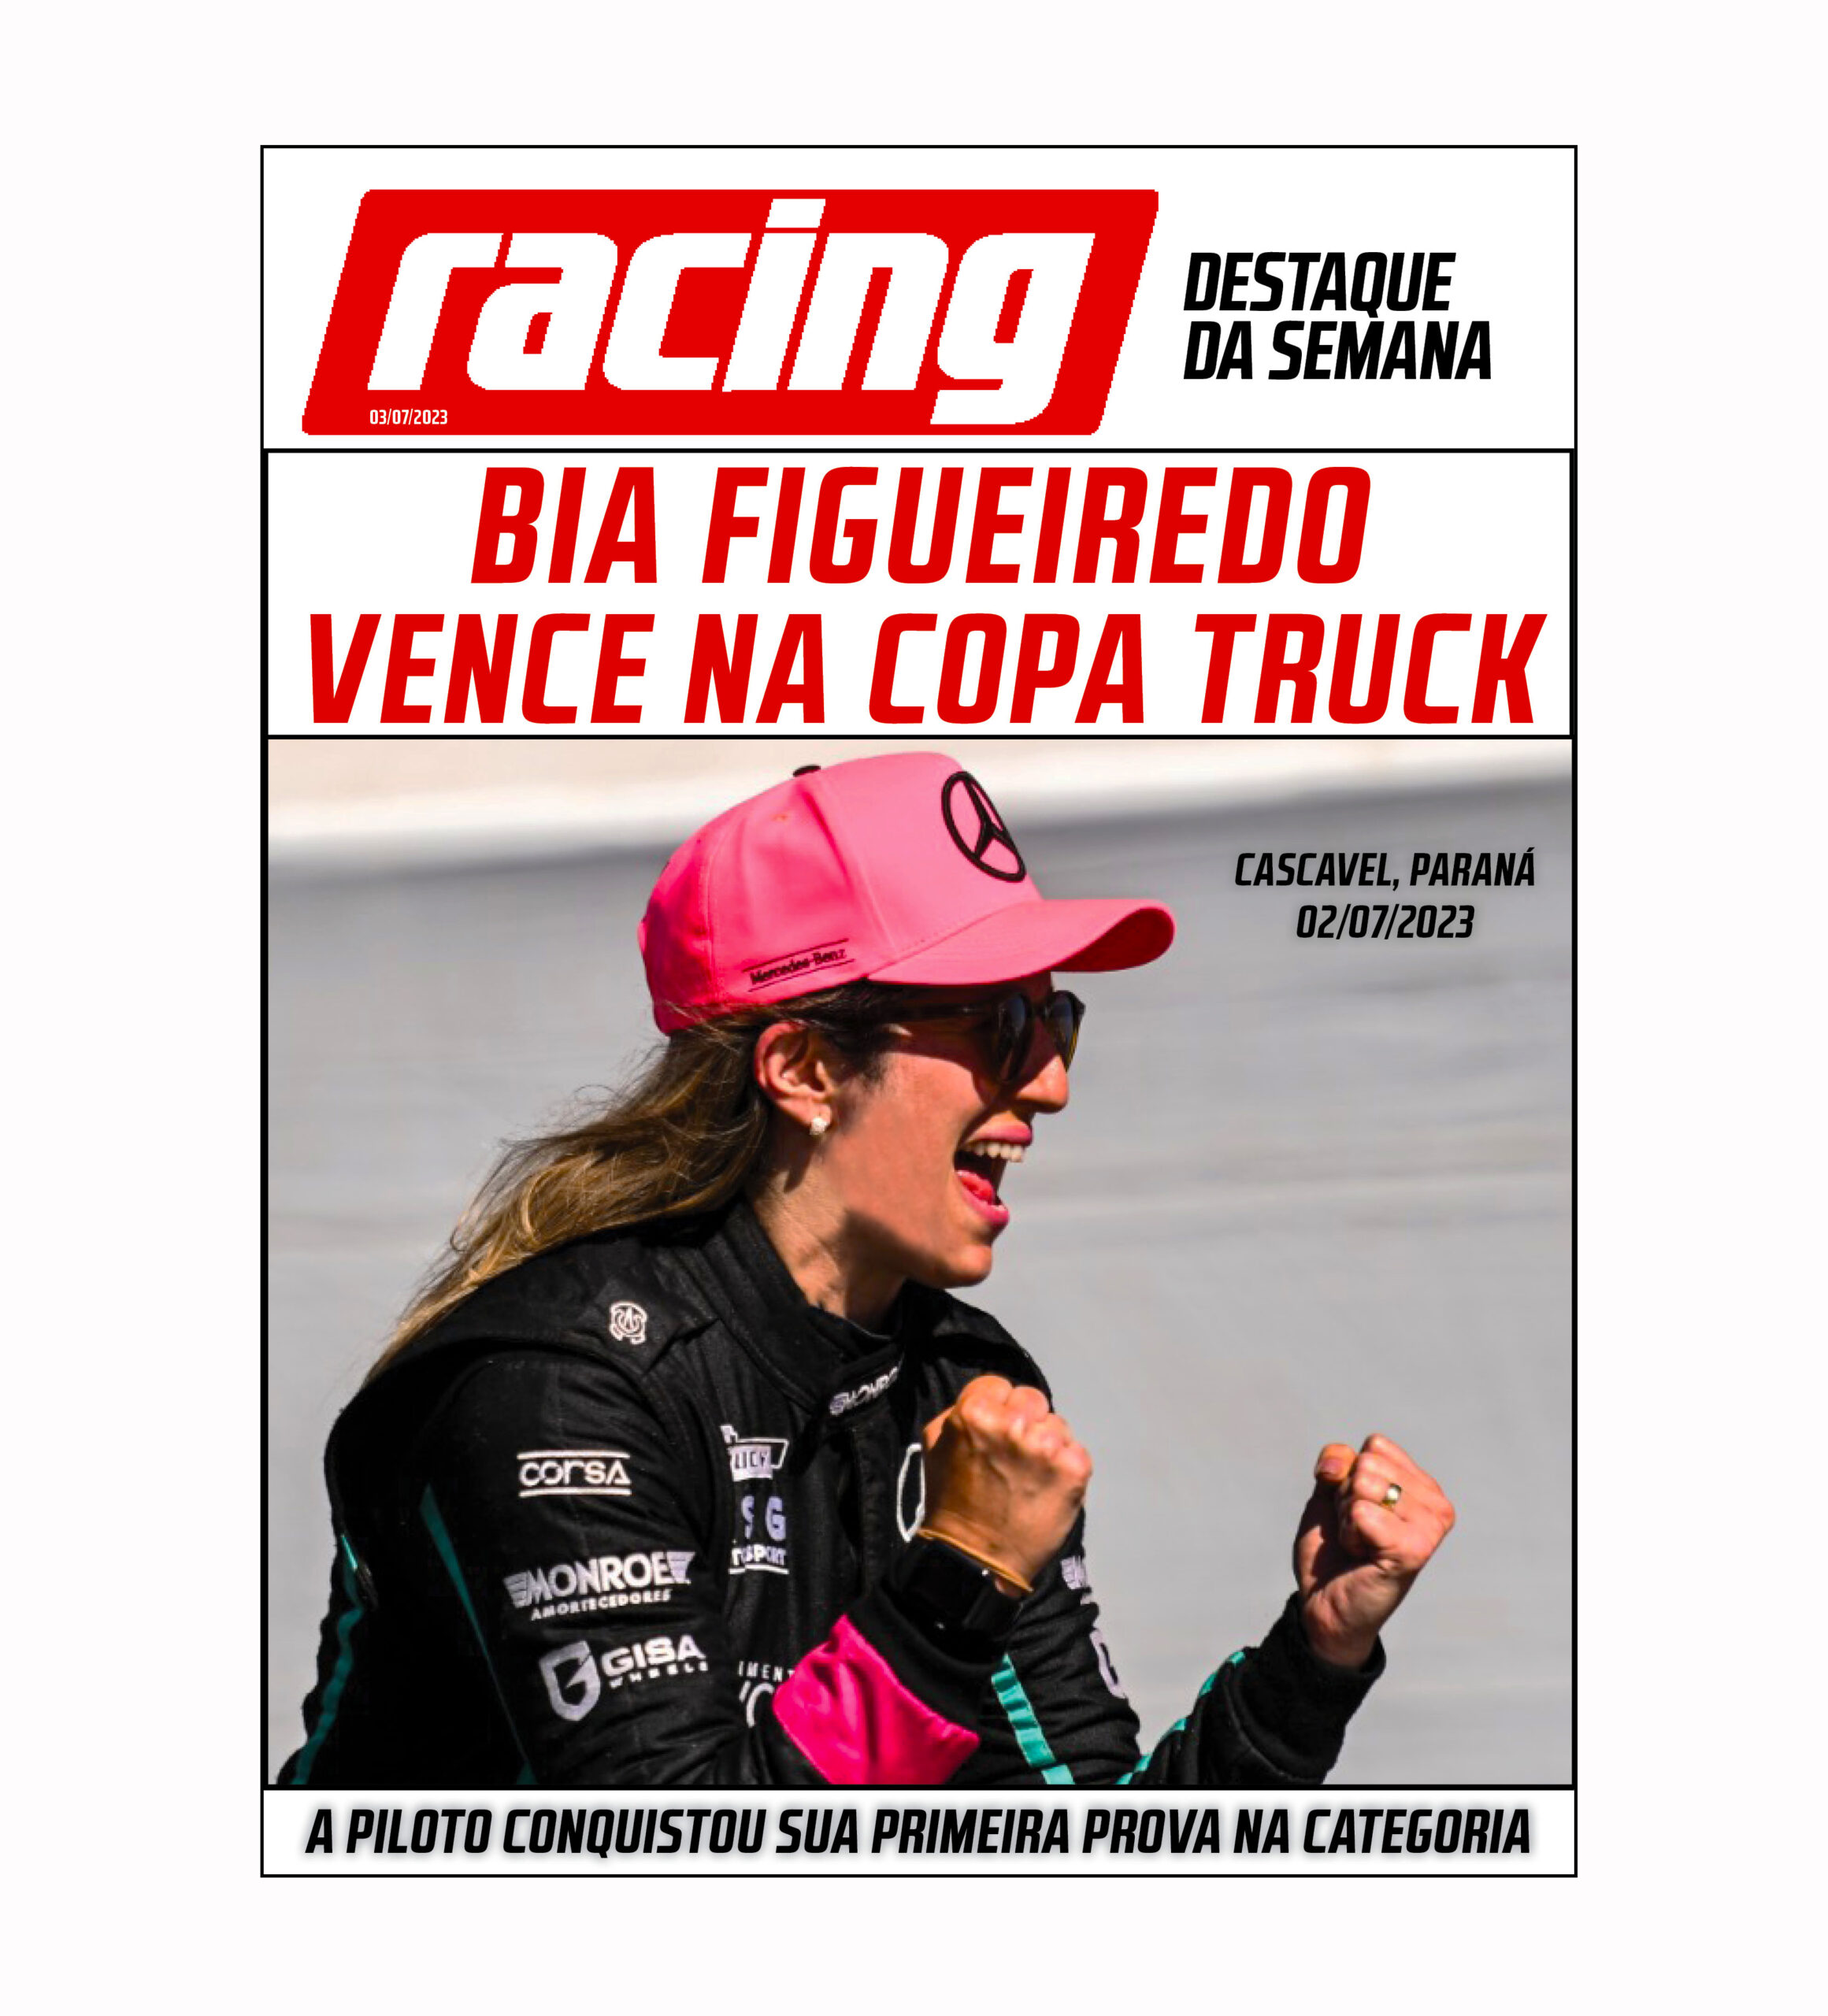 Bia Figueiredo vence na Copa Truck 2023